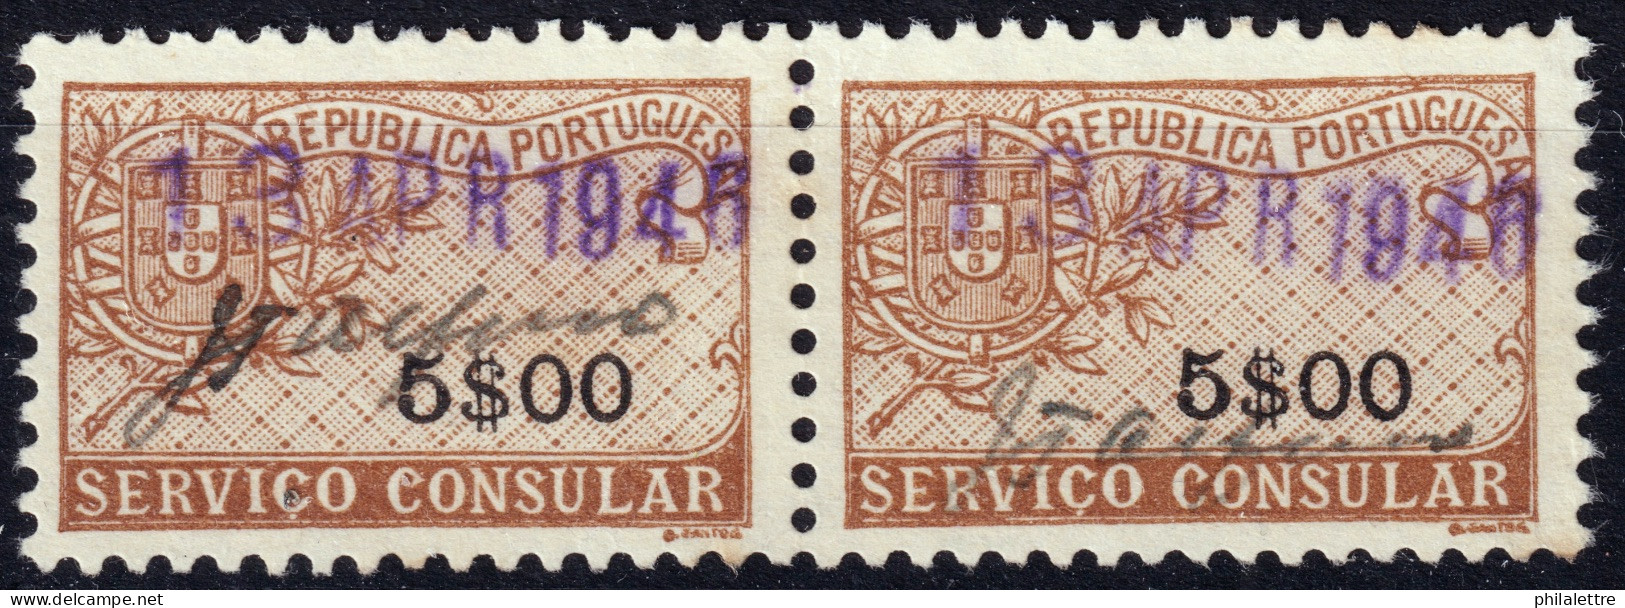 PORTUGAL - 1946 Pair Of 5.00esc. "SERVICIO CONSULAR" Fiscal Revenue Stamp - Very Fine Used - Usado